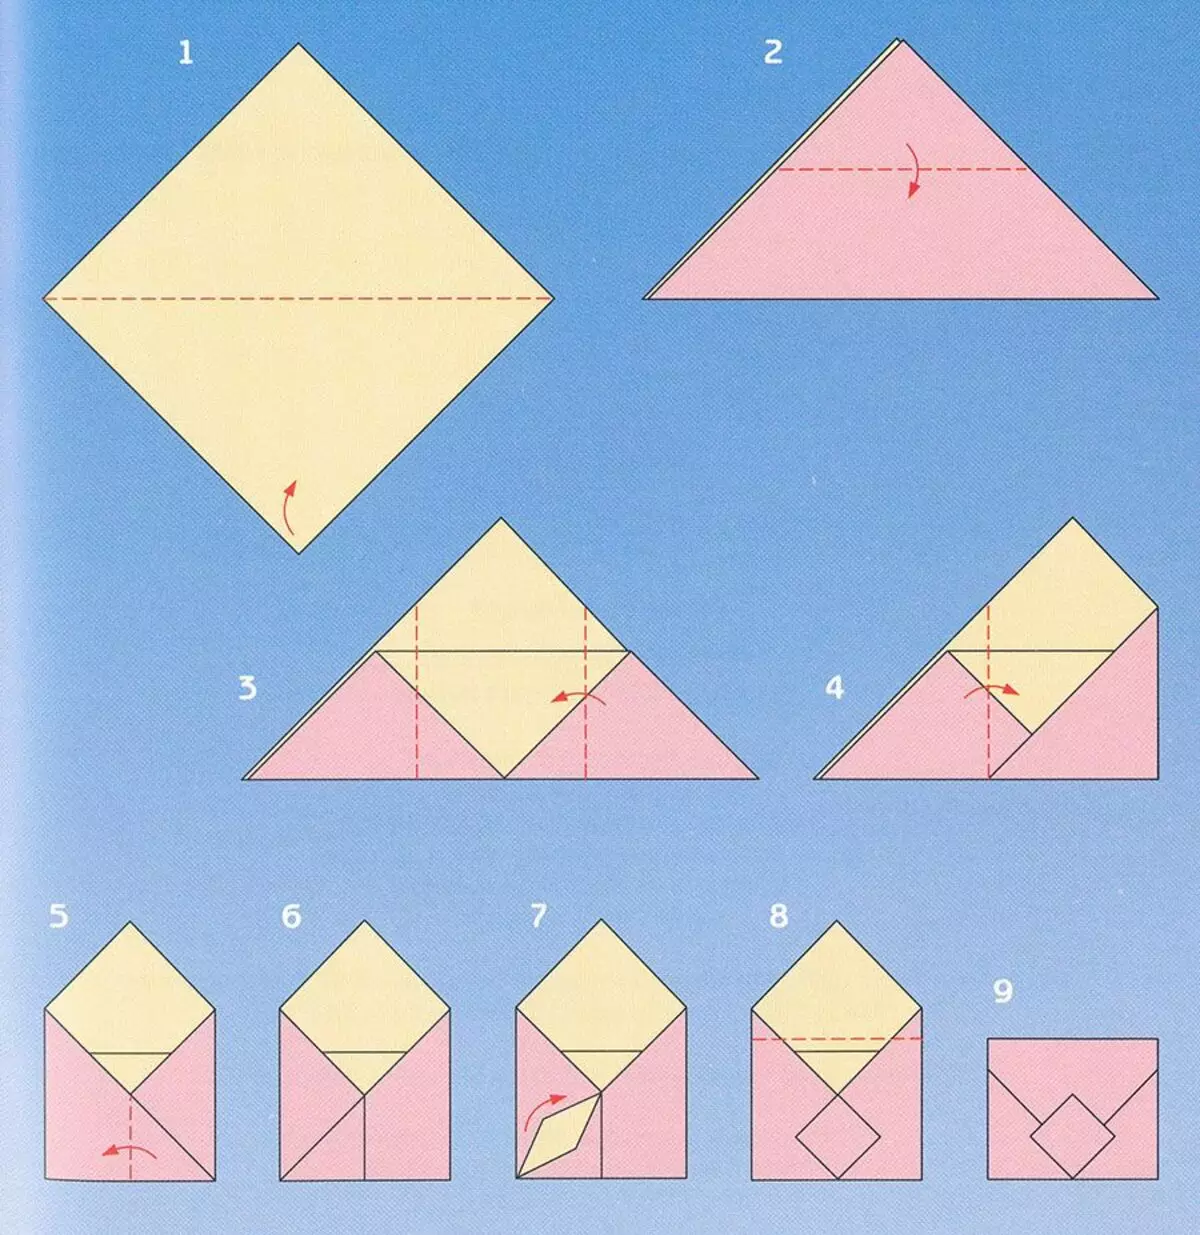 Письмо конверт из бумаги а4. Как сделать конвертик из бумаги а4. Как сложить конверт из бумаги а4. Как сложить конвертик из бумаги а4. Как сделать конверт из листа бумаги а4.